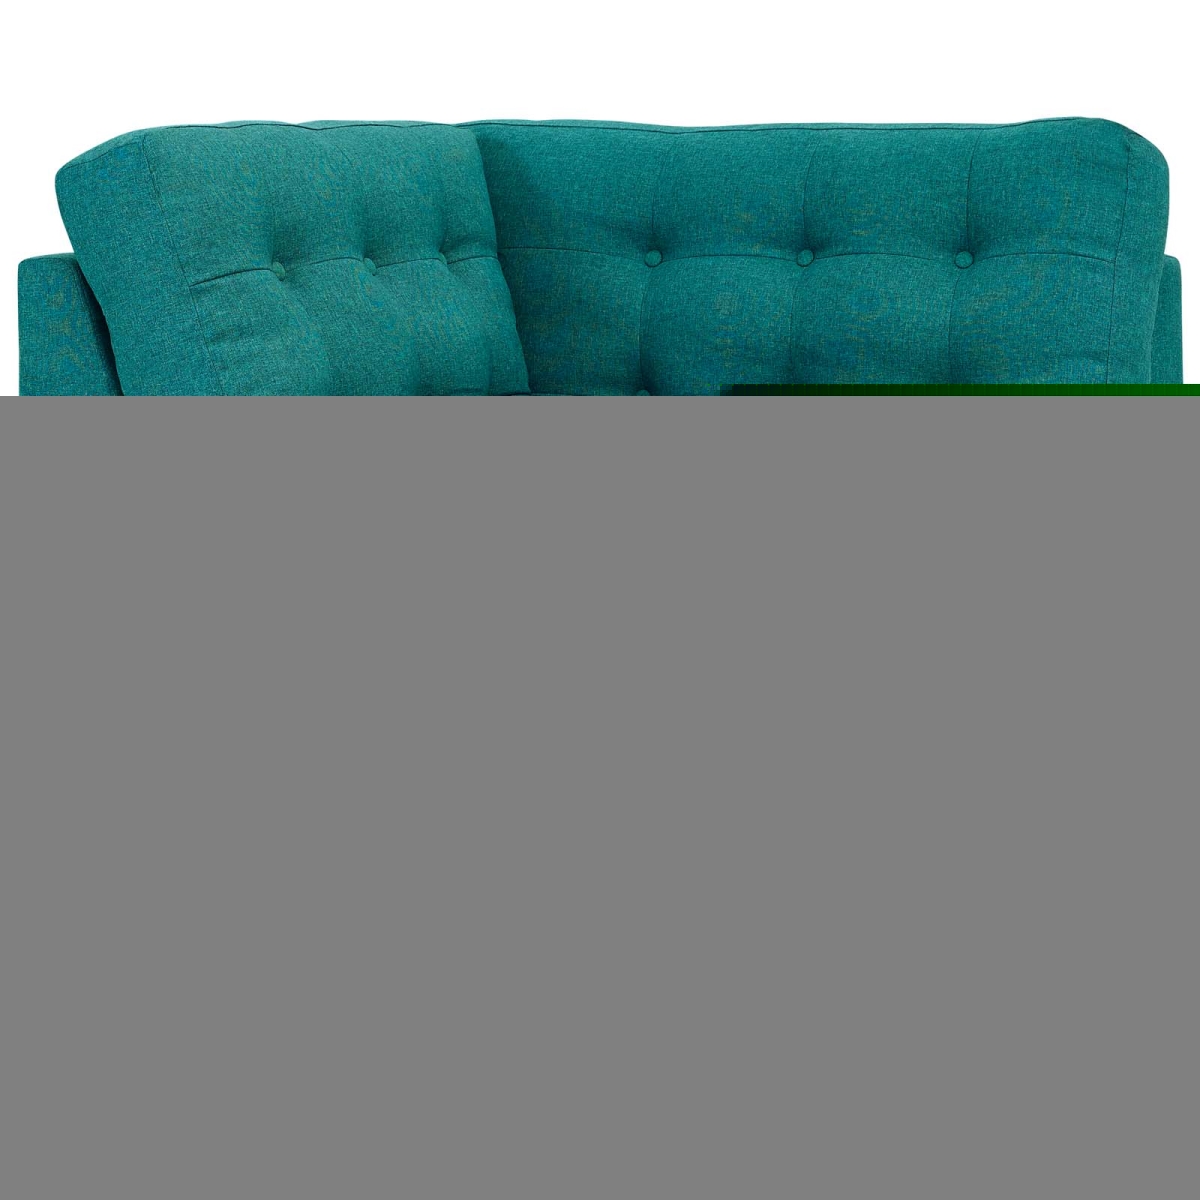 Modway Eei-2610-tea Empress Upholstered Fabric Corner Sofa, Teal